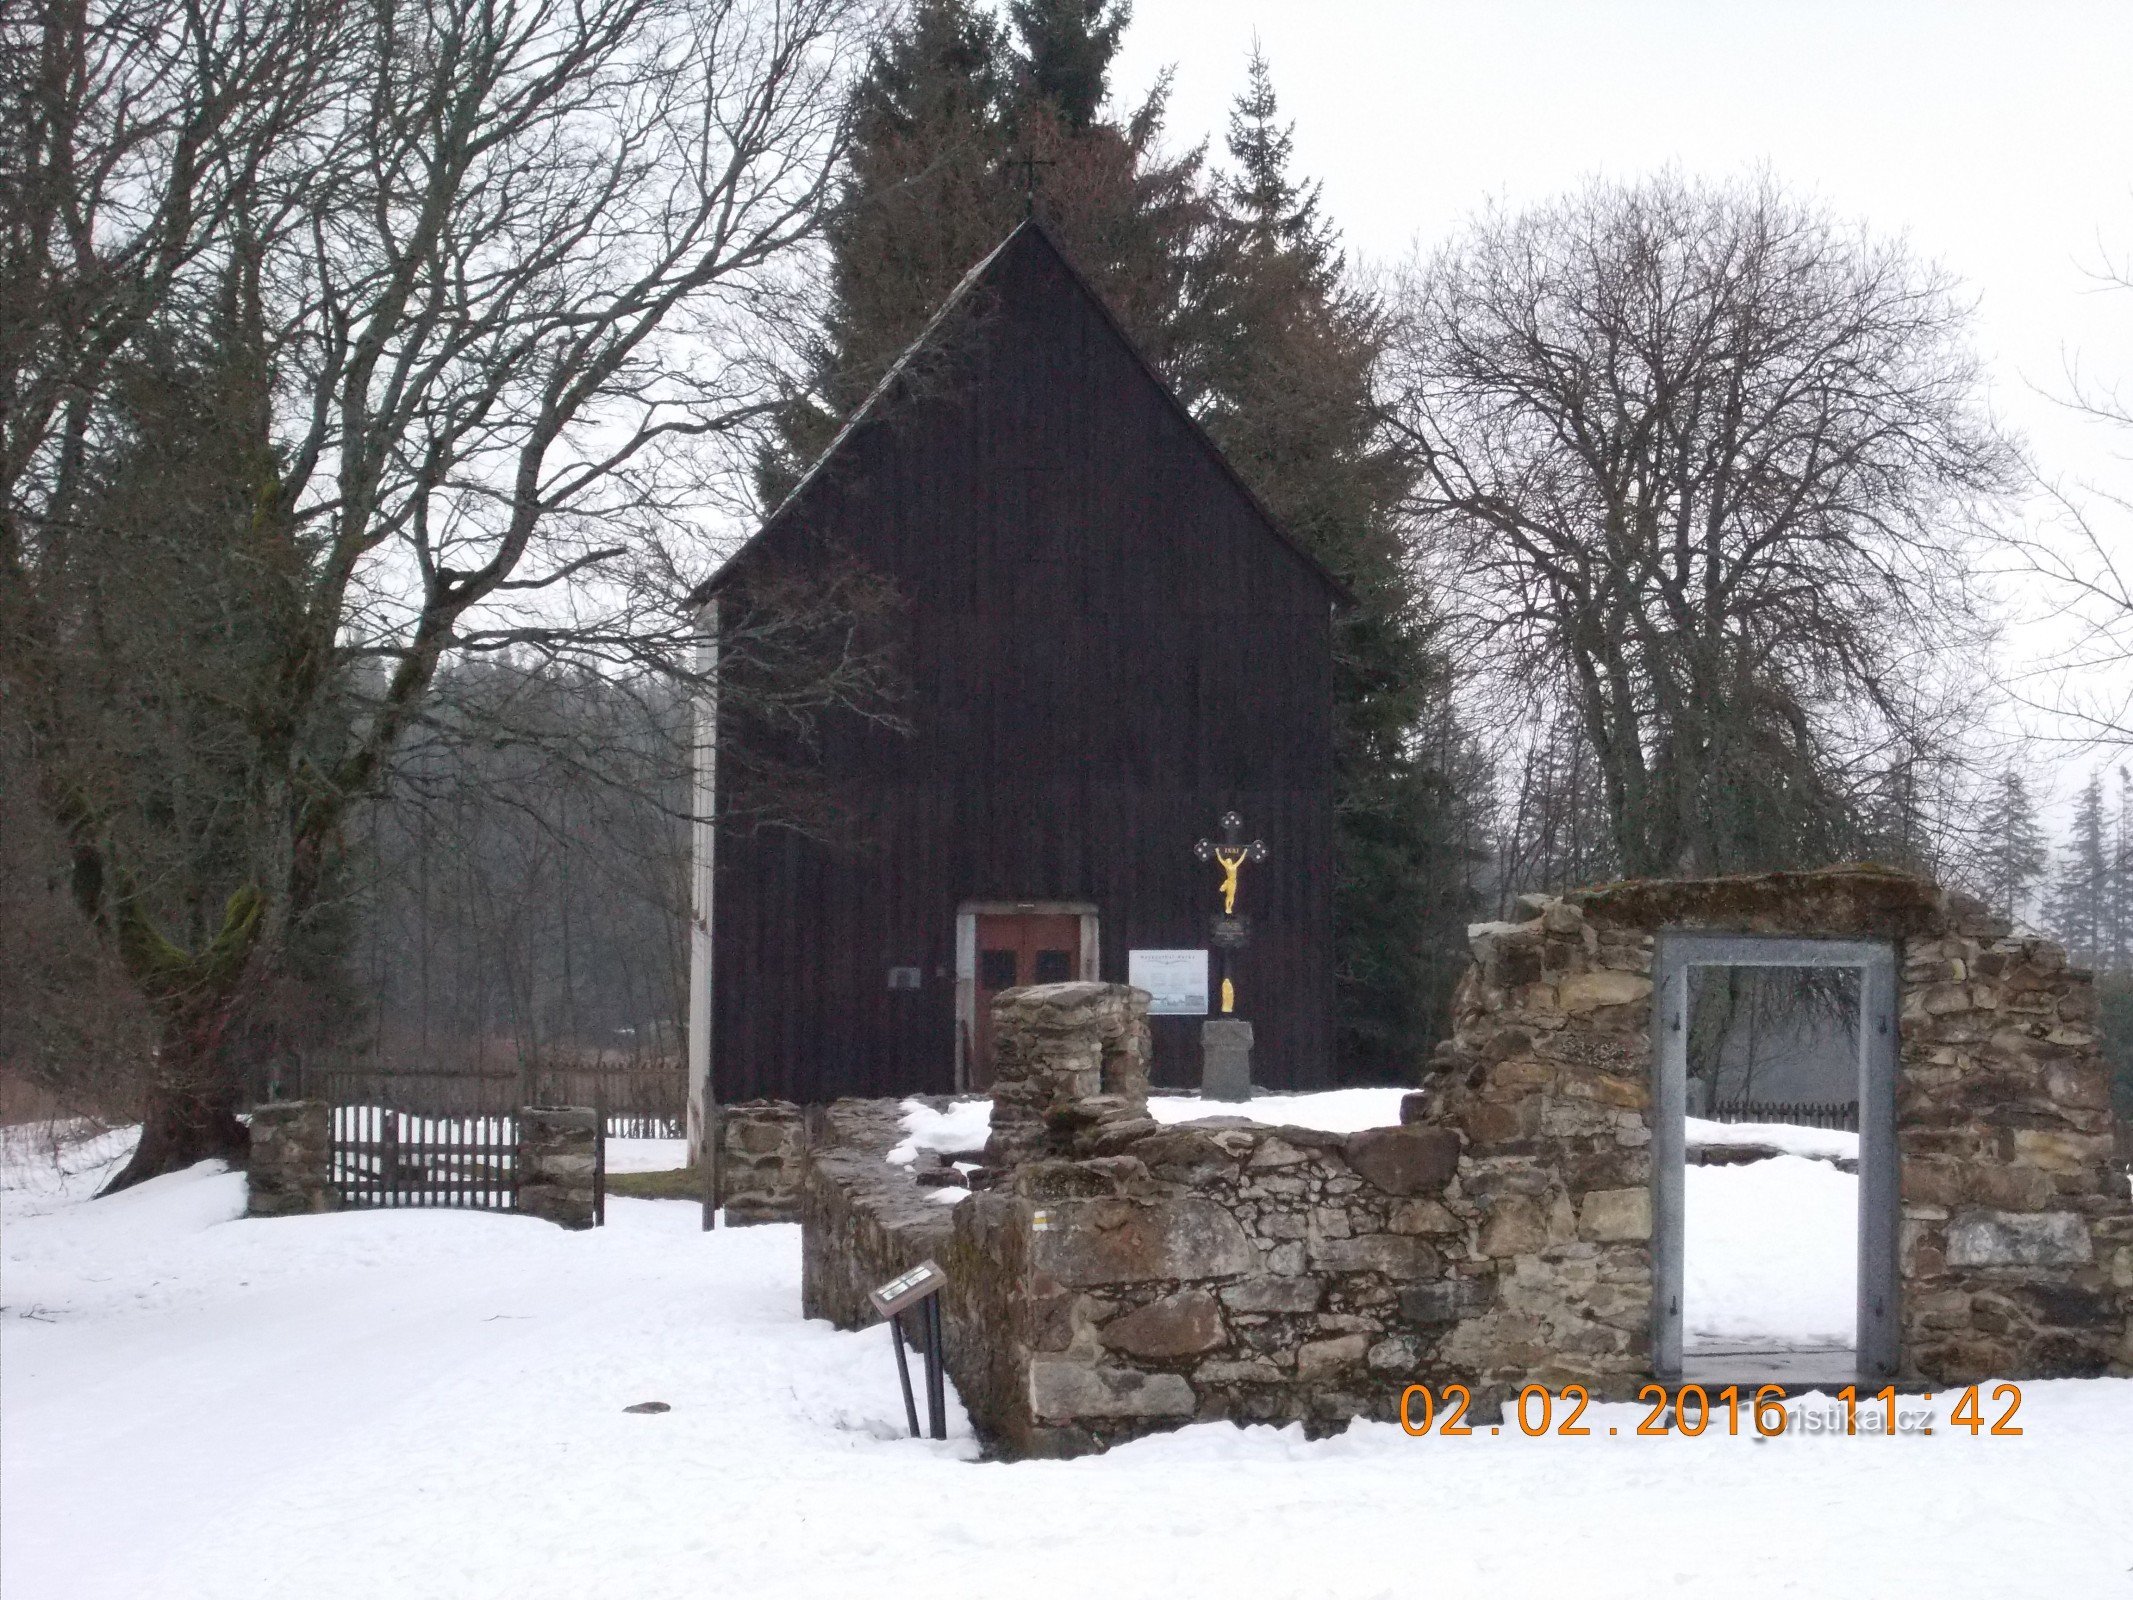 Νεκροταφείο του Αγ. Σταυροί στο χωριό Hůrka